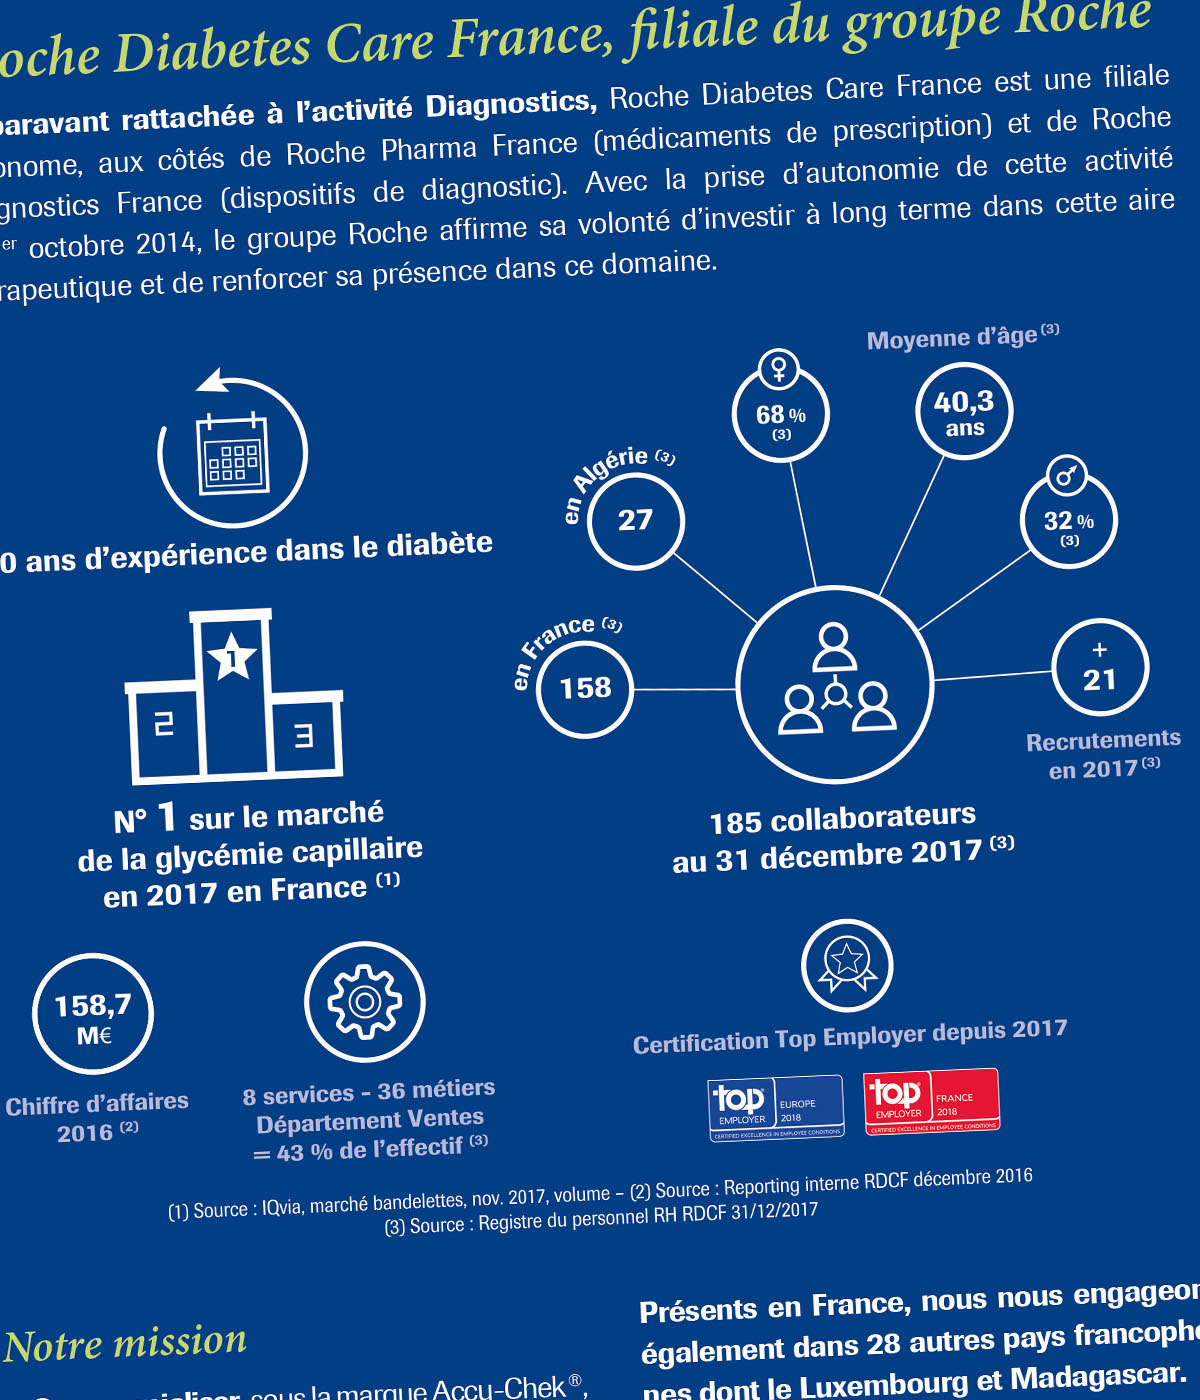 Plaquette commerciale créée pour Roche Diabetes Care par Caramel & Paprika - Zoom sur l'infographie de présentation du groupe Roche intégrée en page 5